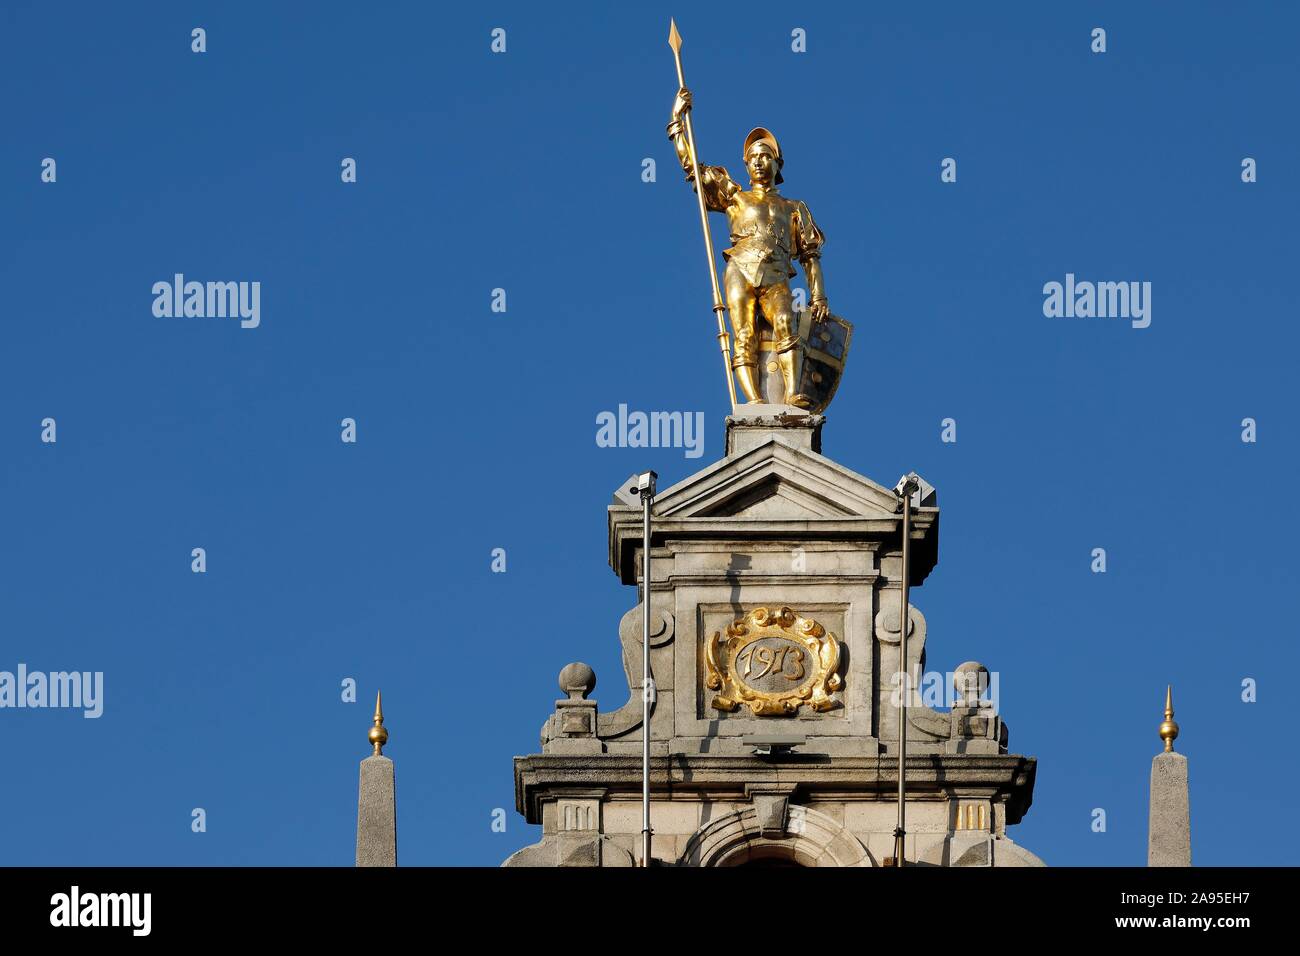 Figura dorata con lancia sul timpano di una Guild house, il Grote Markt, il centro storico di Antwerp, Fiandre, in Belgio Foto Stock